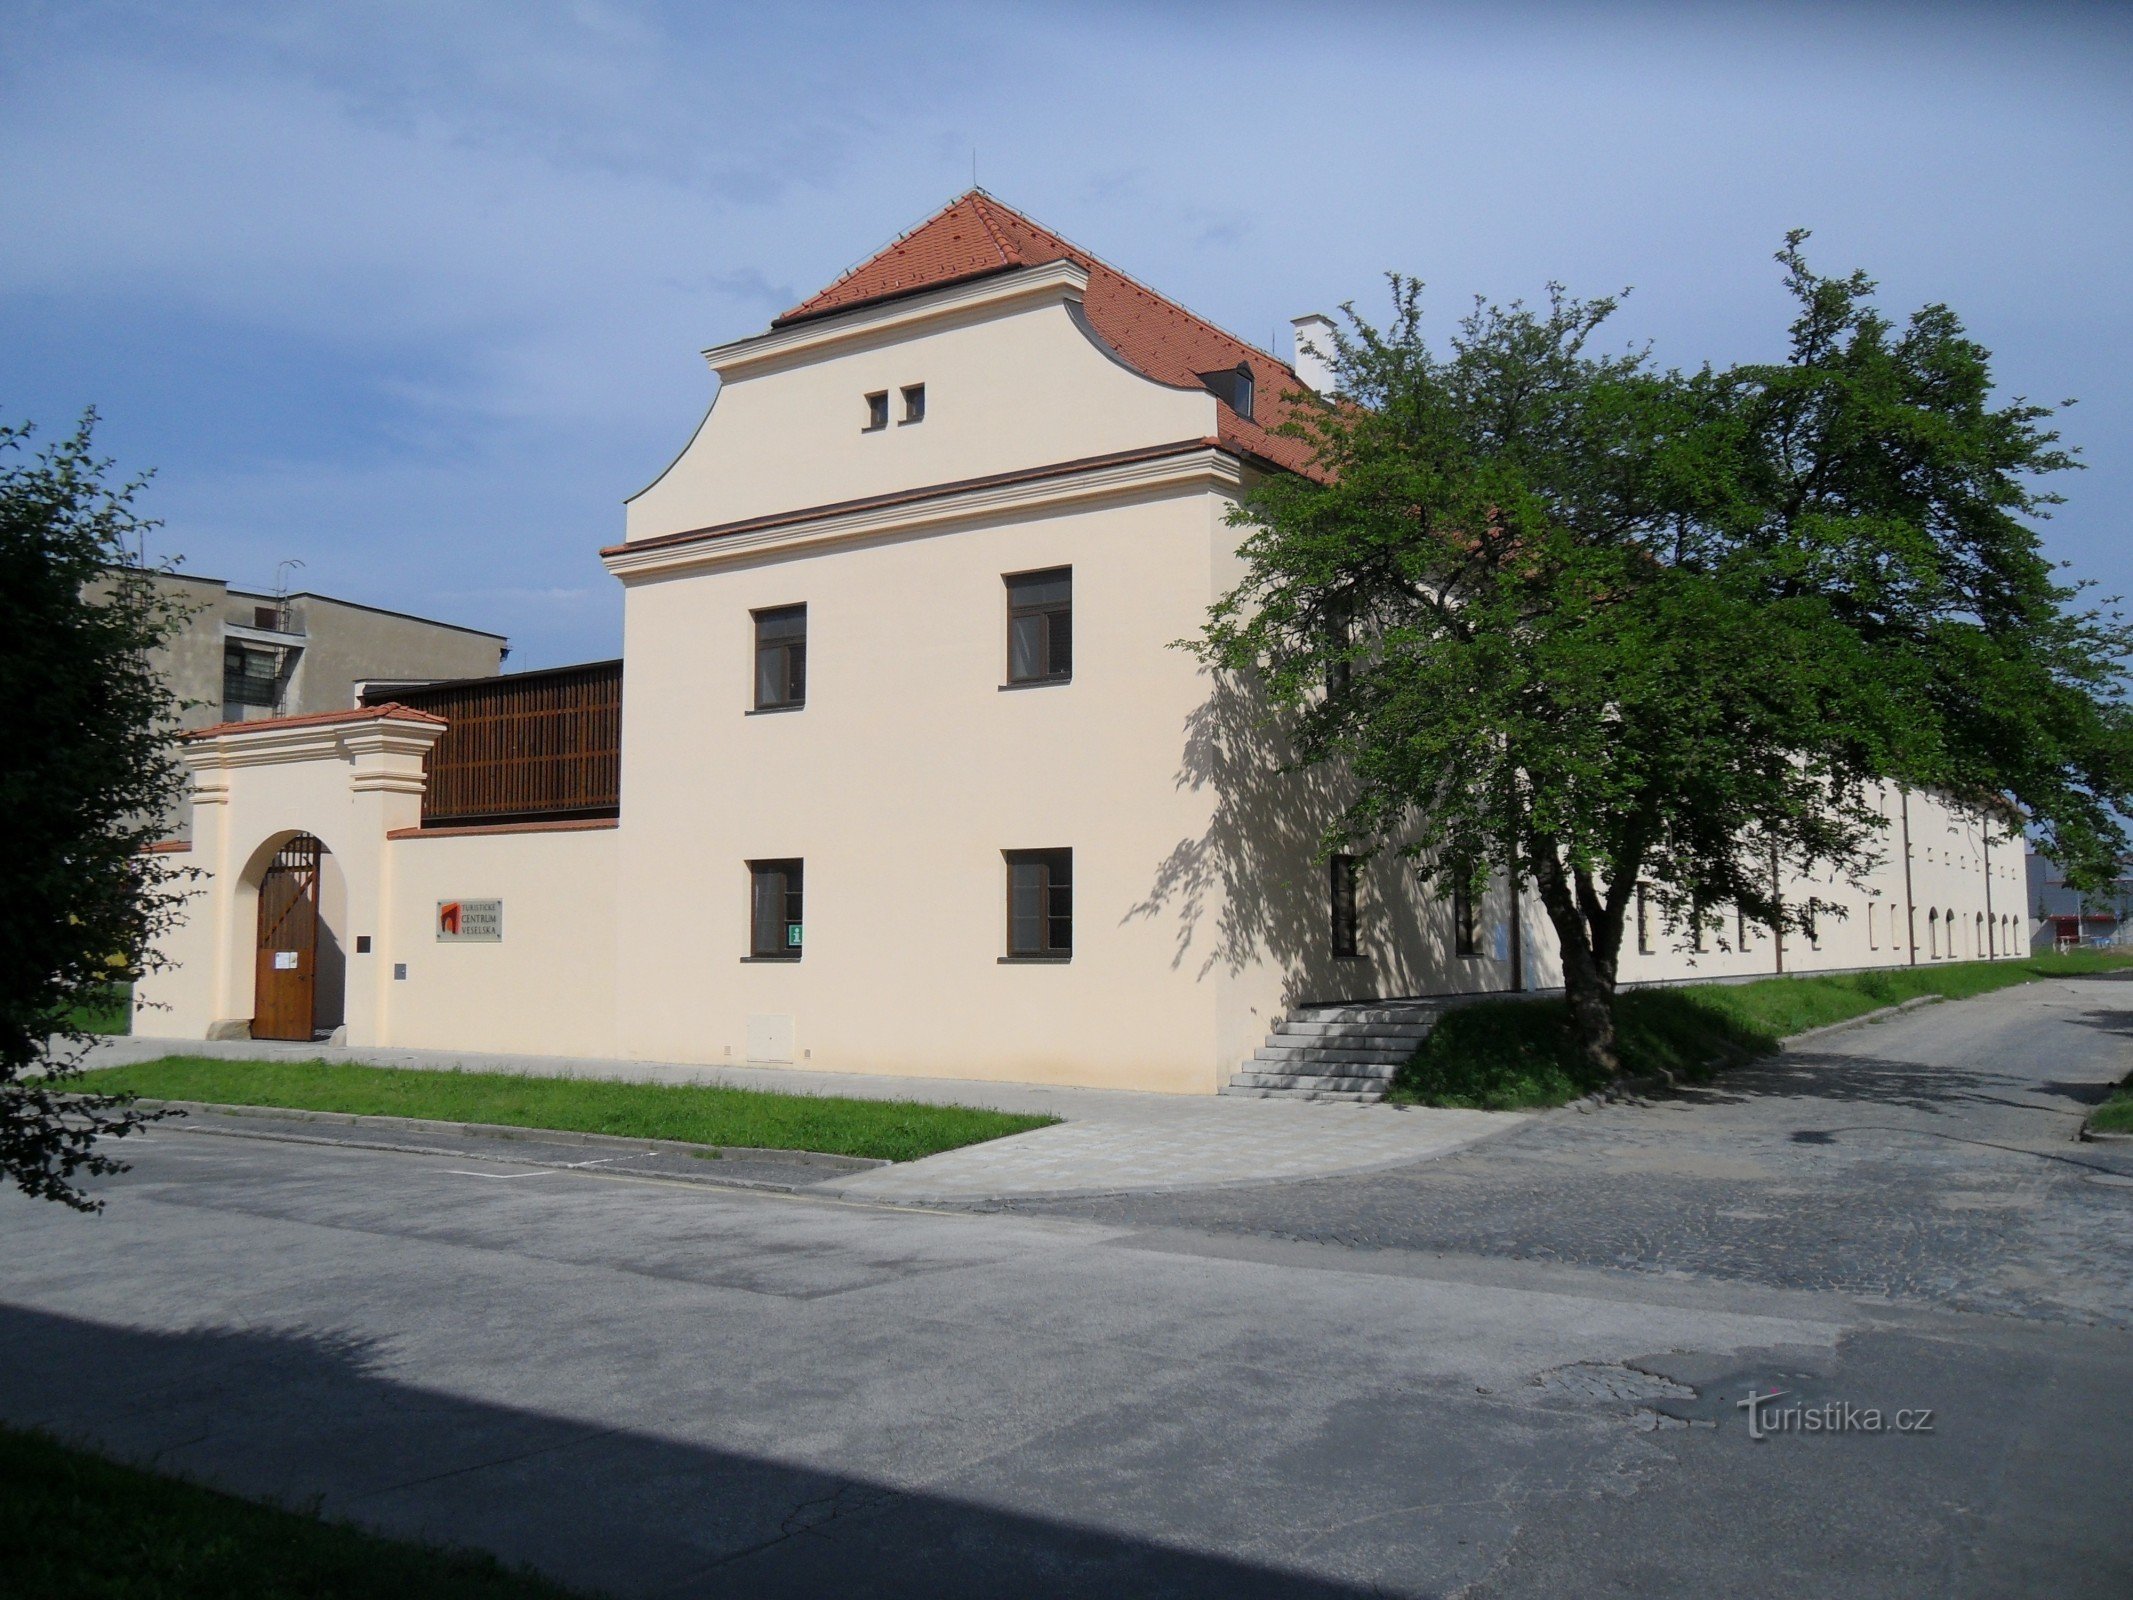 Centro turístico Veselska - Manský dvůr